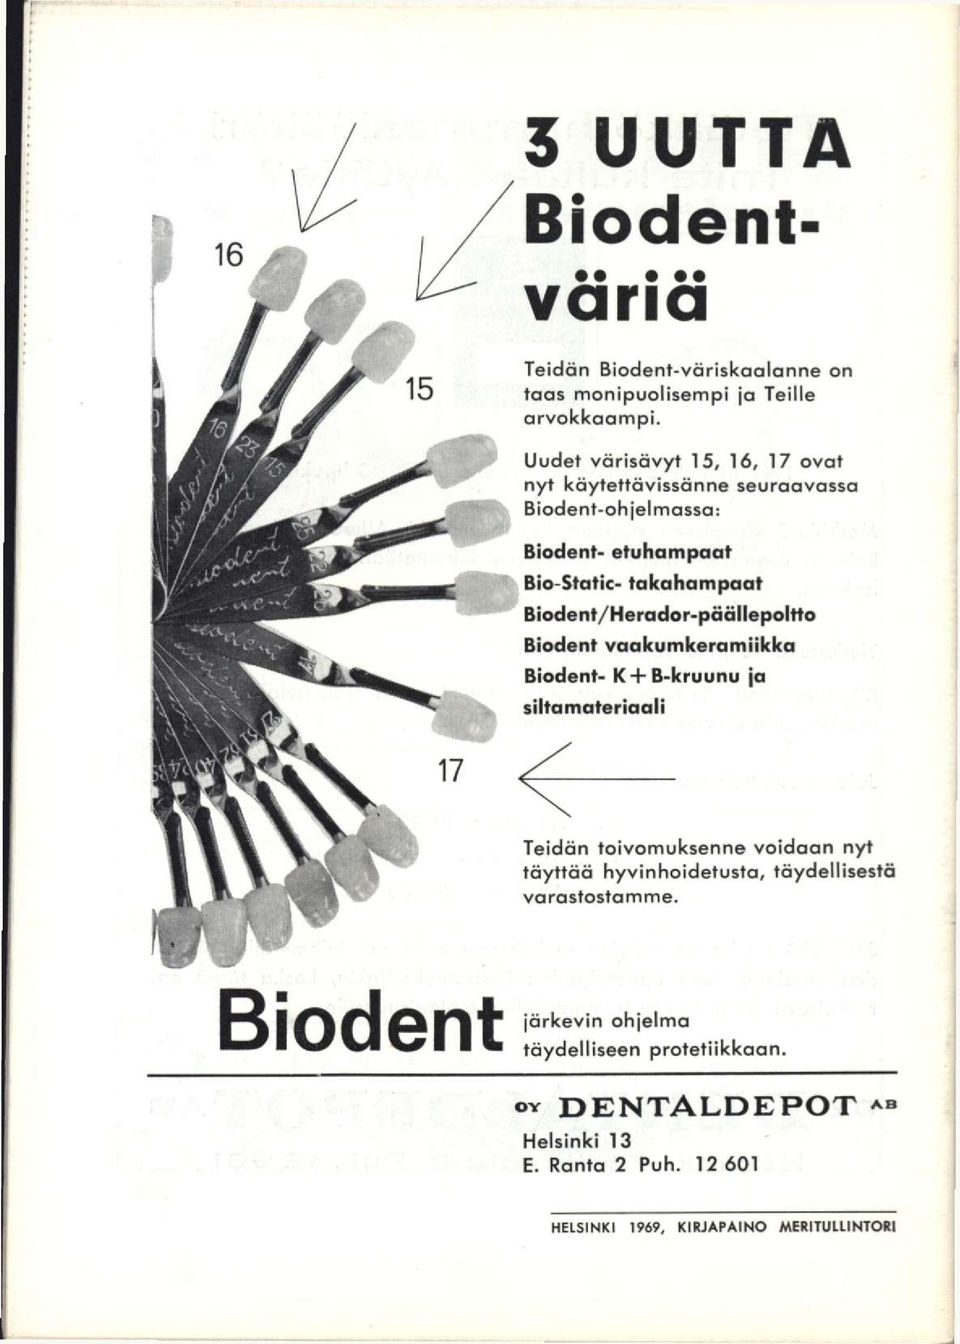 Biodent/Herador-päällepoltto Biodent vaakumkeramlikka Biodent- K-fB-kruunu ja siltamateriaoli Teidän toivomuksenne voidaan nyt täyttää